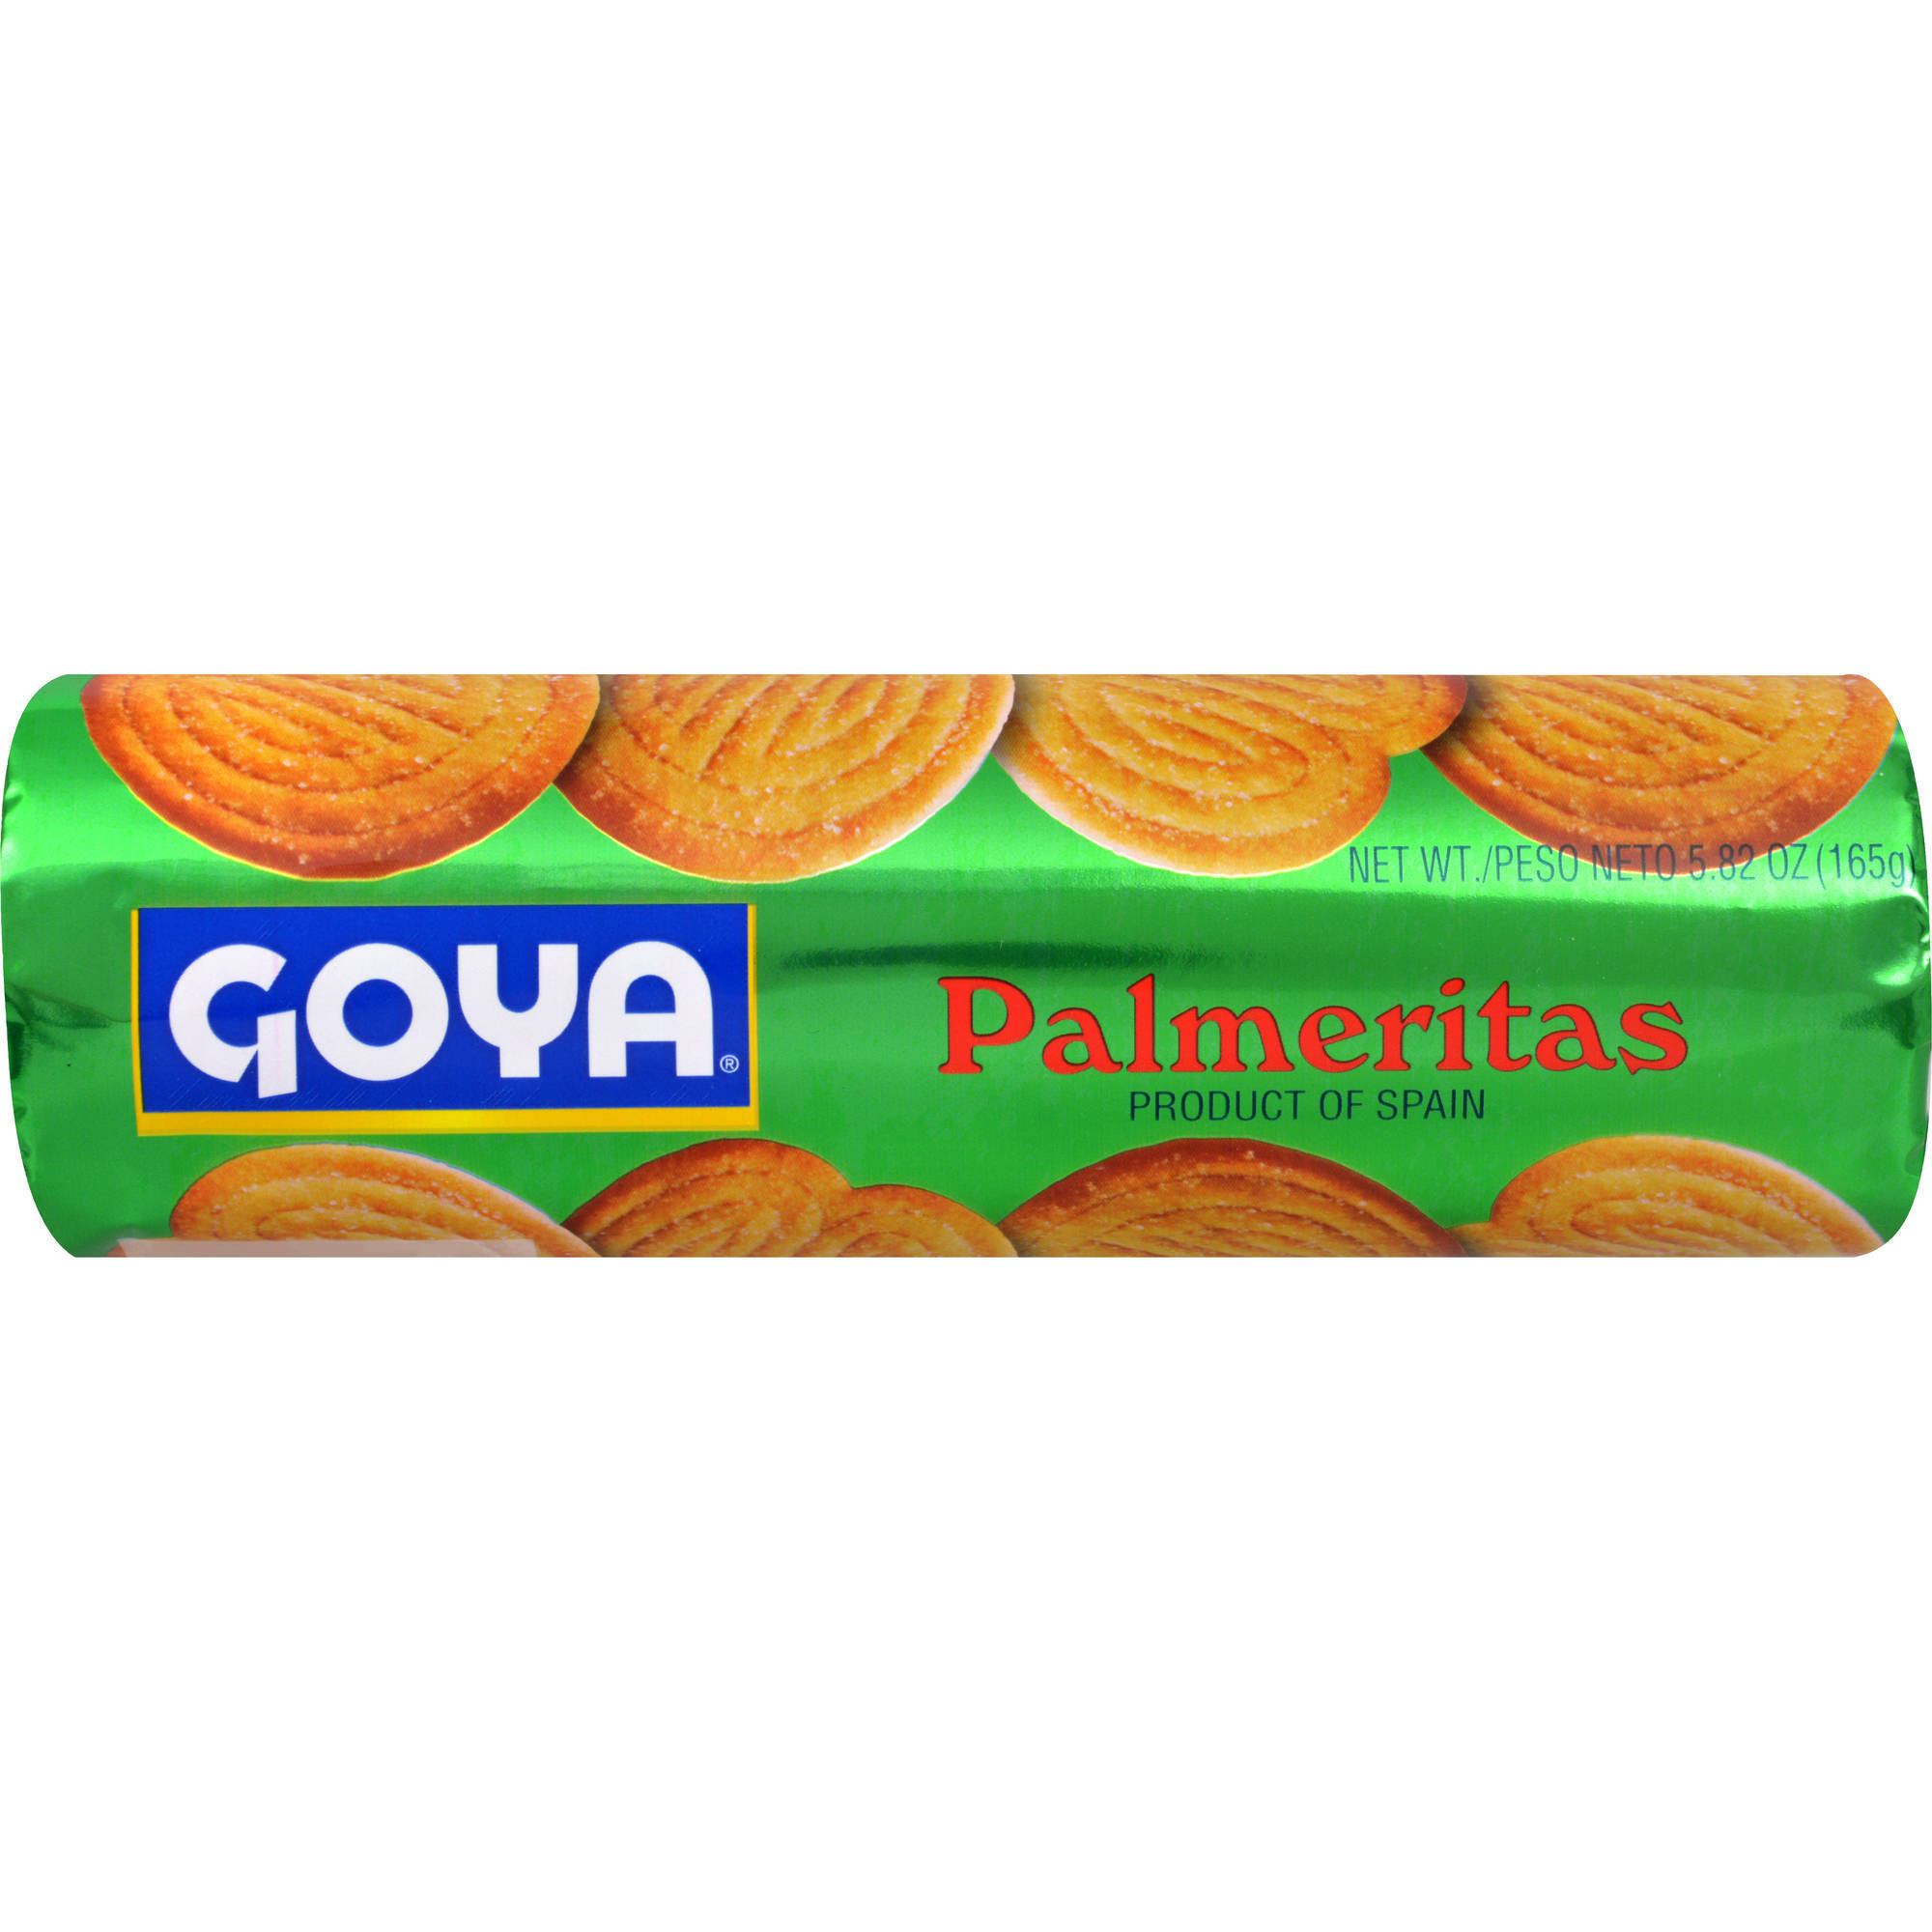 Case of 16 - Goya Palmeritas Cookies - 5.82 Oz (165 Gm)